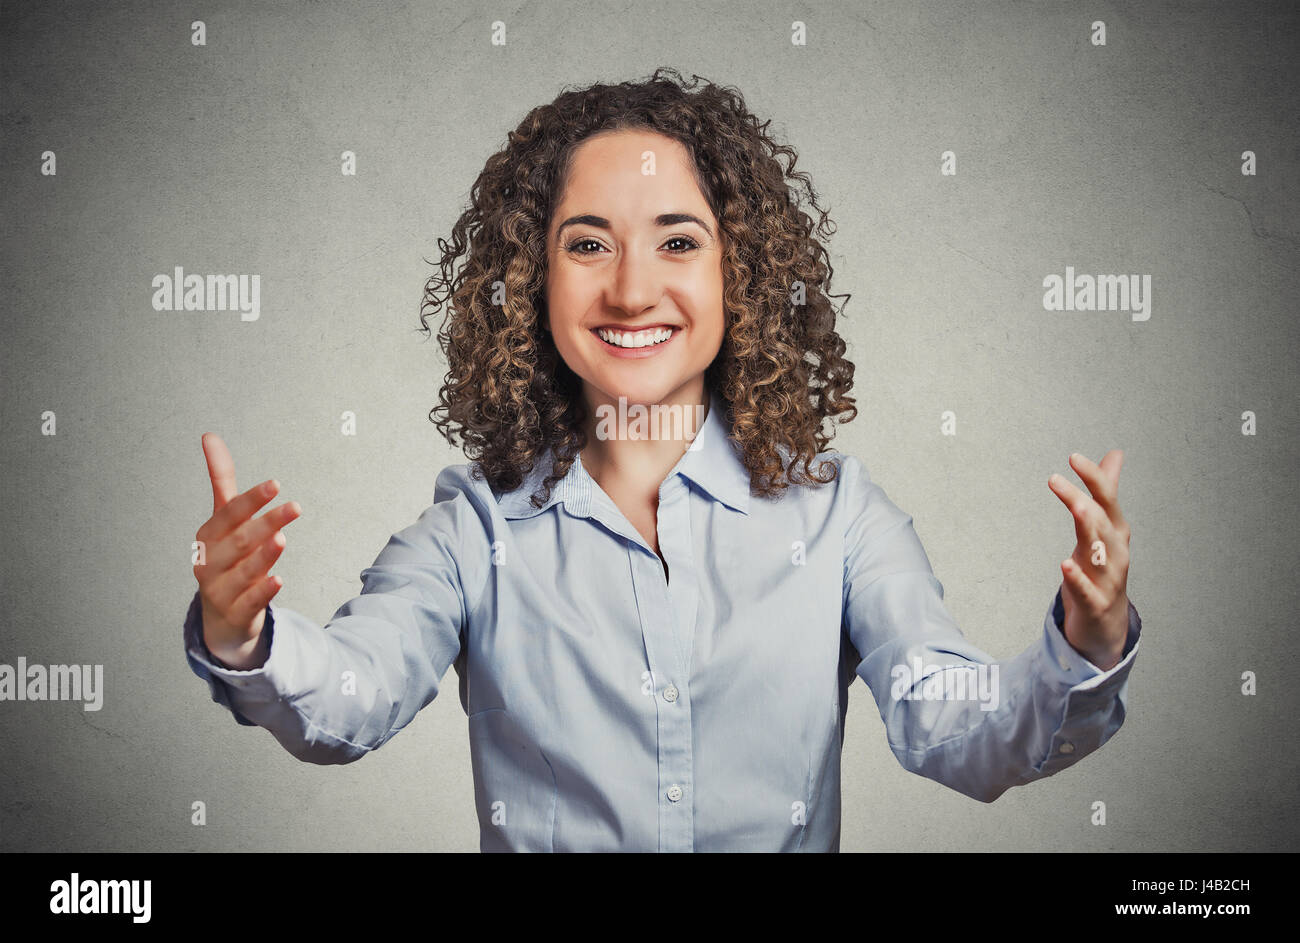 Closeup Portrait junge glückliche Frau winkte mit Armen zu kommen und gib ihr einen Bären umarmen isoliert graue Wand Background. Positive Emotionen Gesichts expressi Stockfoto